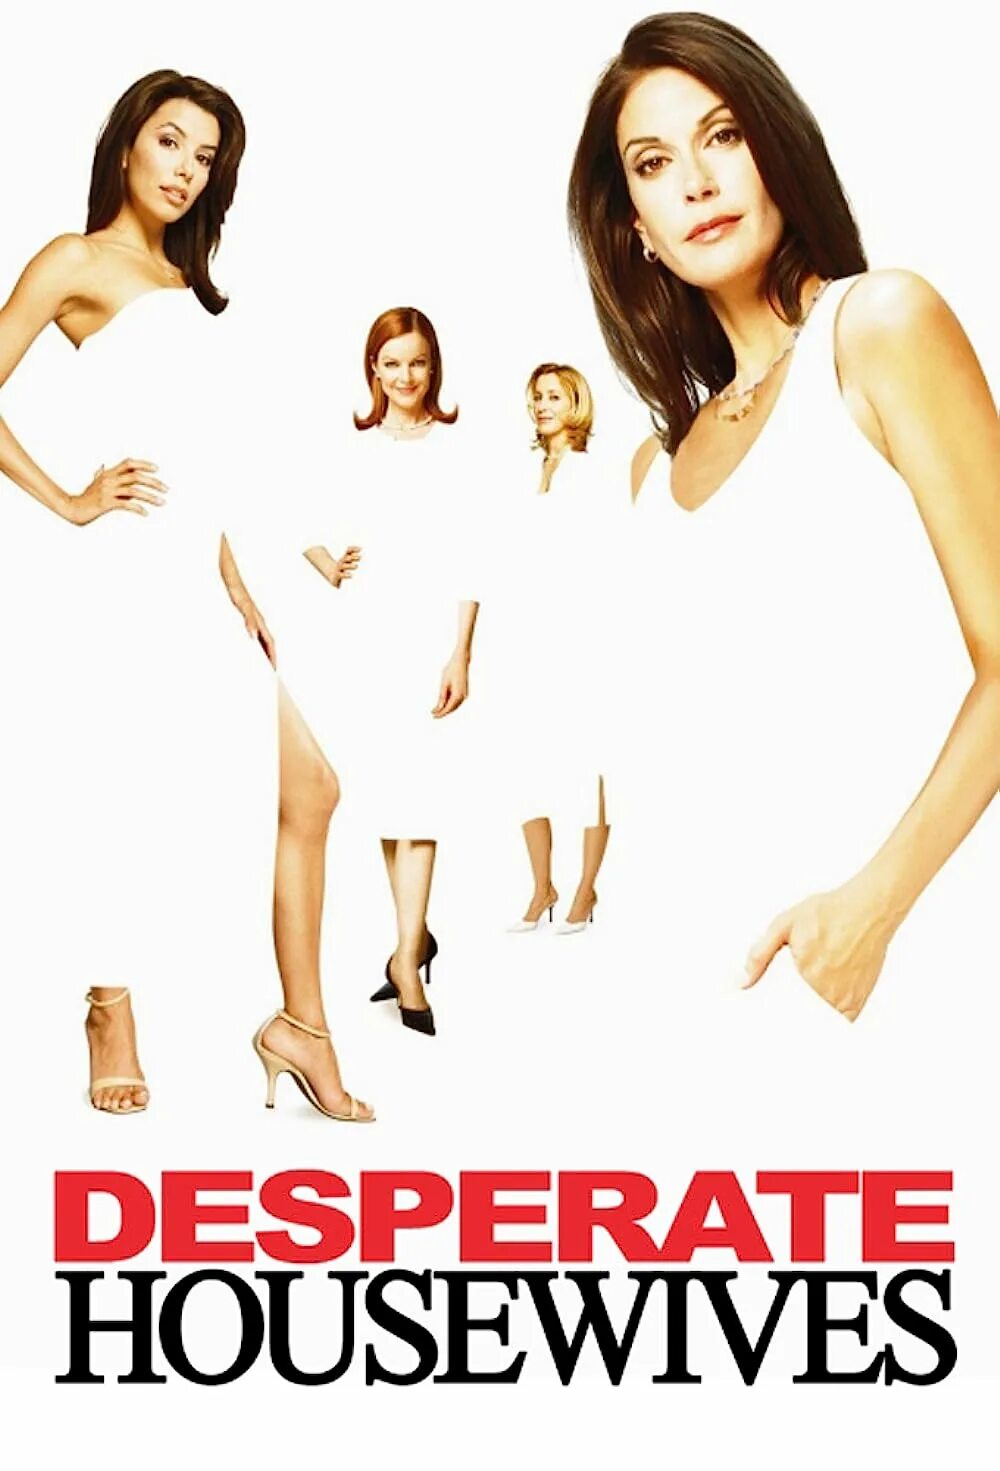 Отчаянные домохозяйки (2004) (desperate housewives). Отчаянные домохозяйки Постер. Алисия Овьедо отчаянные домохозяйки.